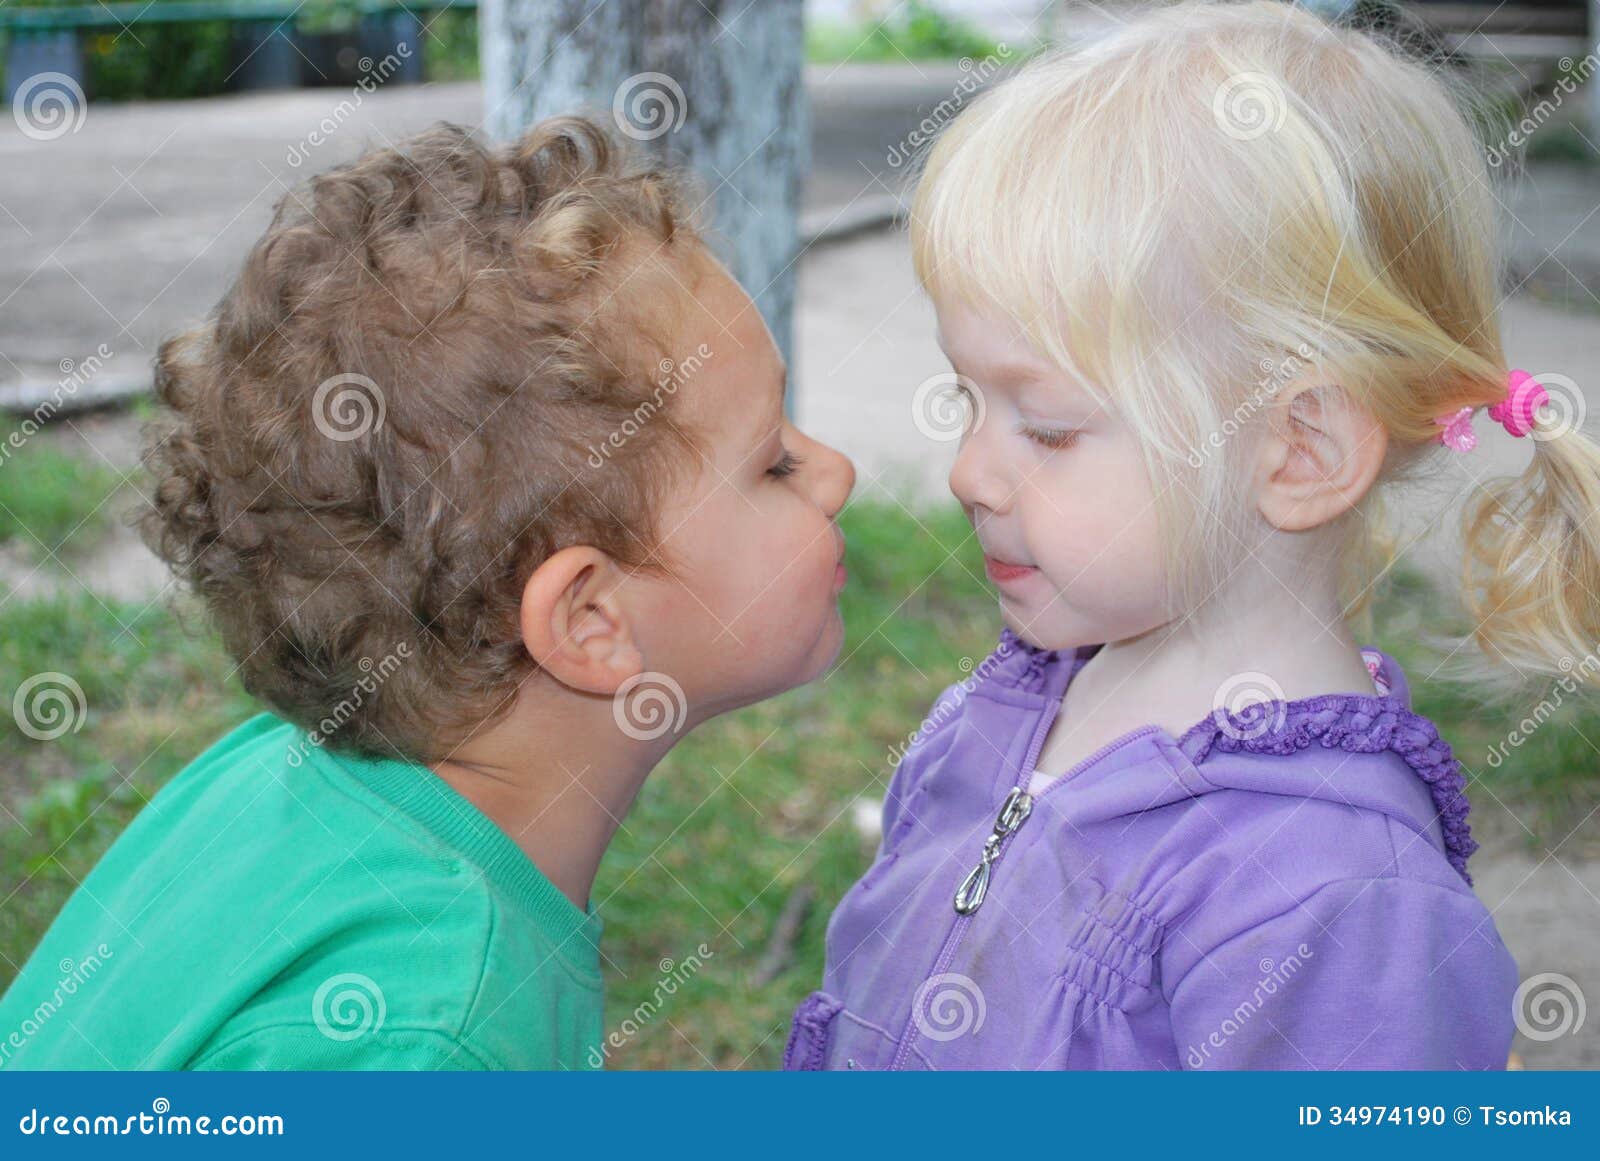 亲吻男孩的可爱的女孩 库存照片. 图片 包括有 孩子, 愉快, 逗人喜爱, 头发, 礼服, 快乐, 拥抱 - 29275414